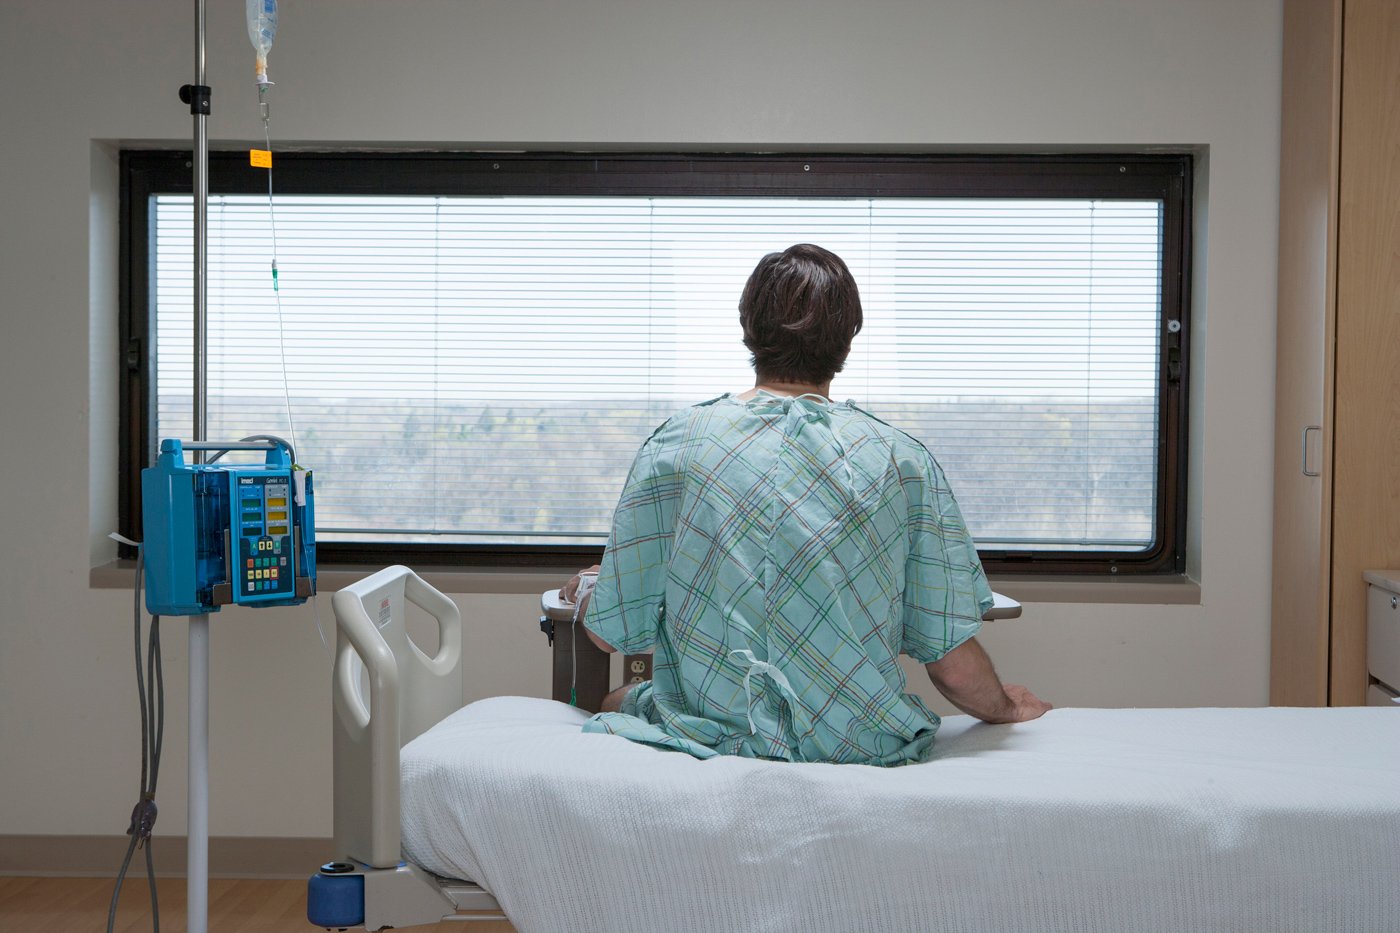  Dritarja e spitalit: Vizioni i shpresës dhe inkurajimit